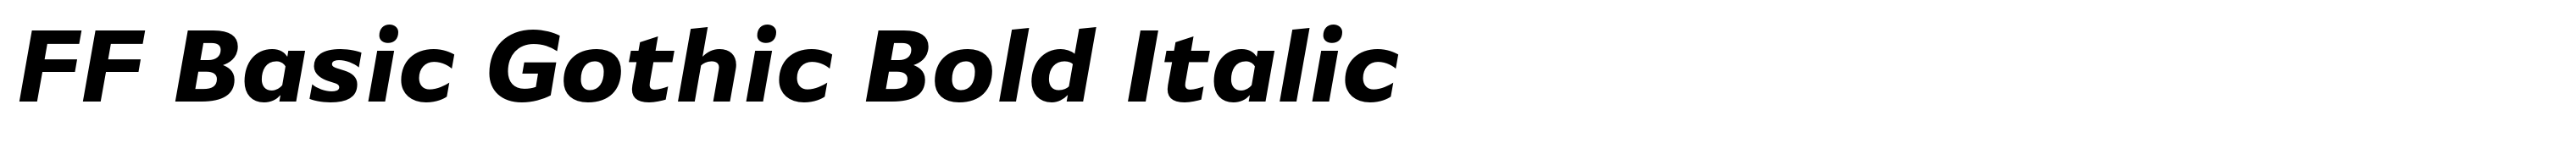 FF Basic Gothic Bold Italic